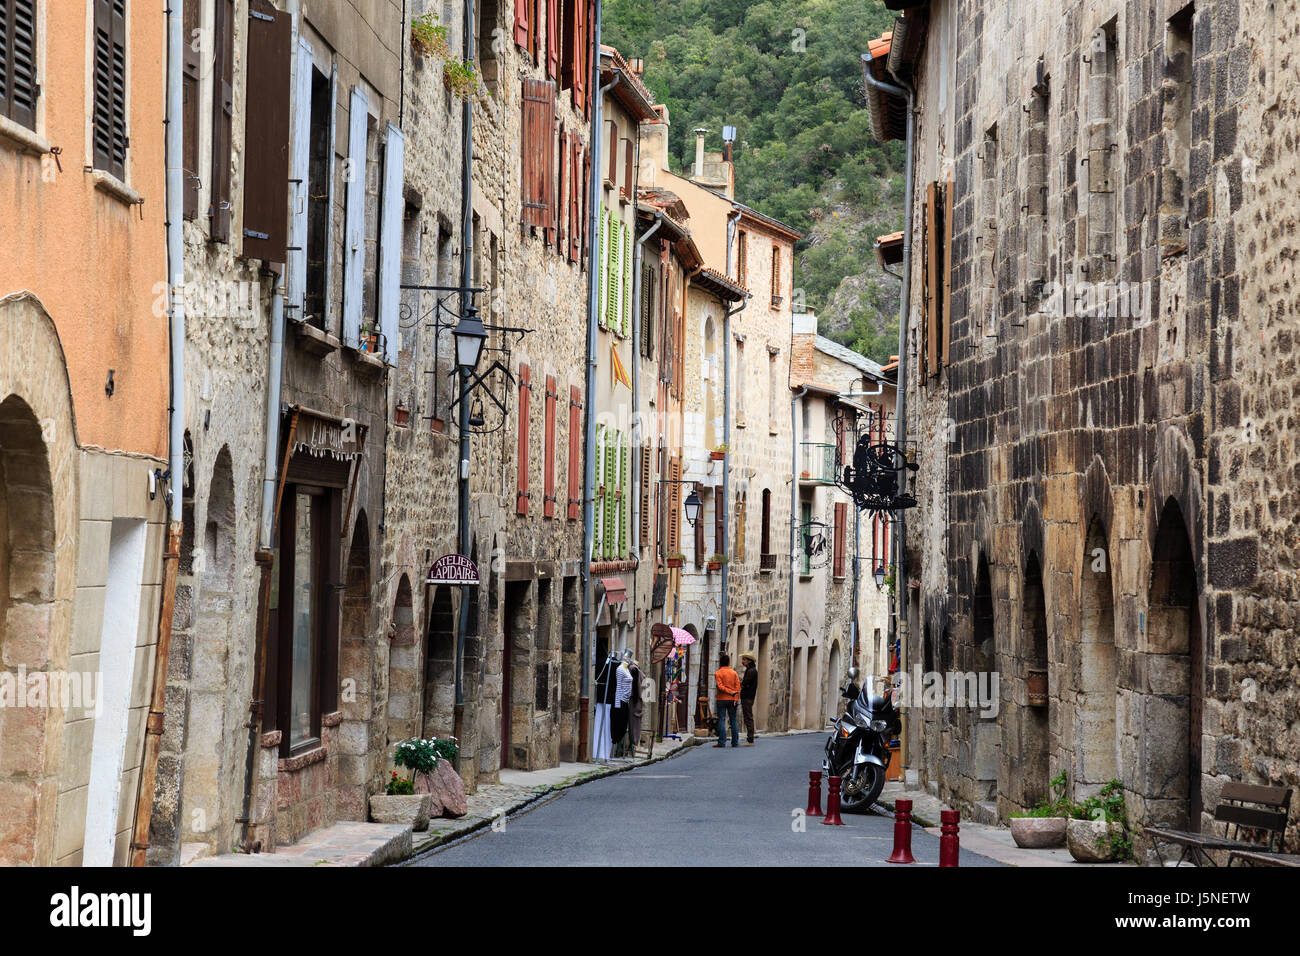 France, Pyrenees Orientales, Villefranche de Conflent, labelled Les Plus Beaux Villages de France ( Most beautiful Villages of France), St-Jean street Stock Photo